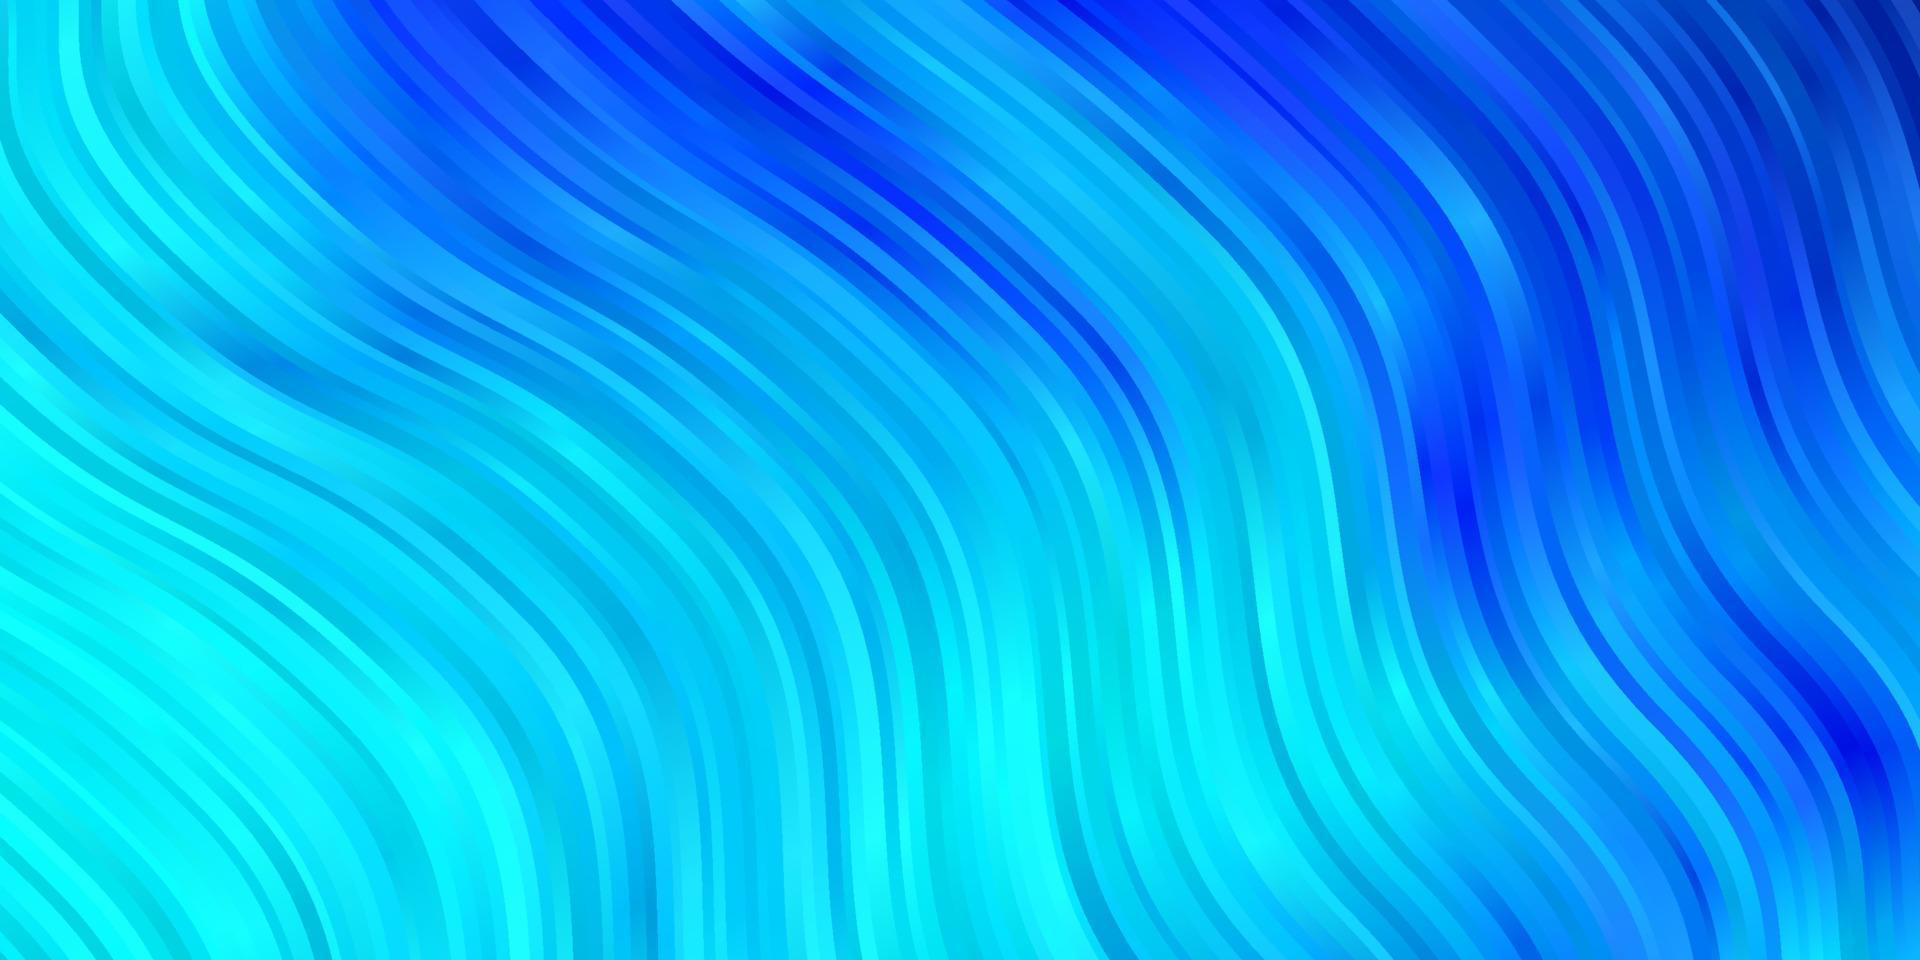 ljusblå vektor bakgrund med böjda linjer.